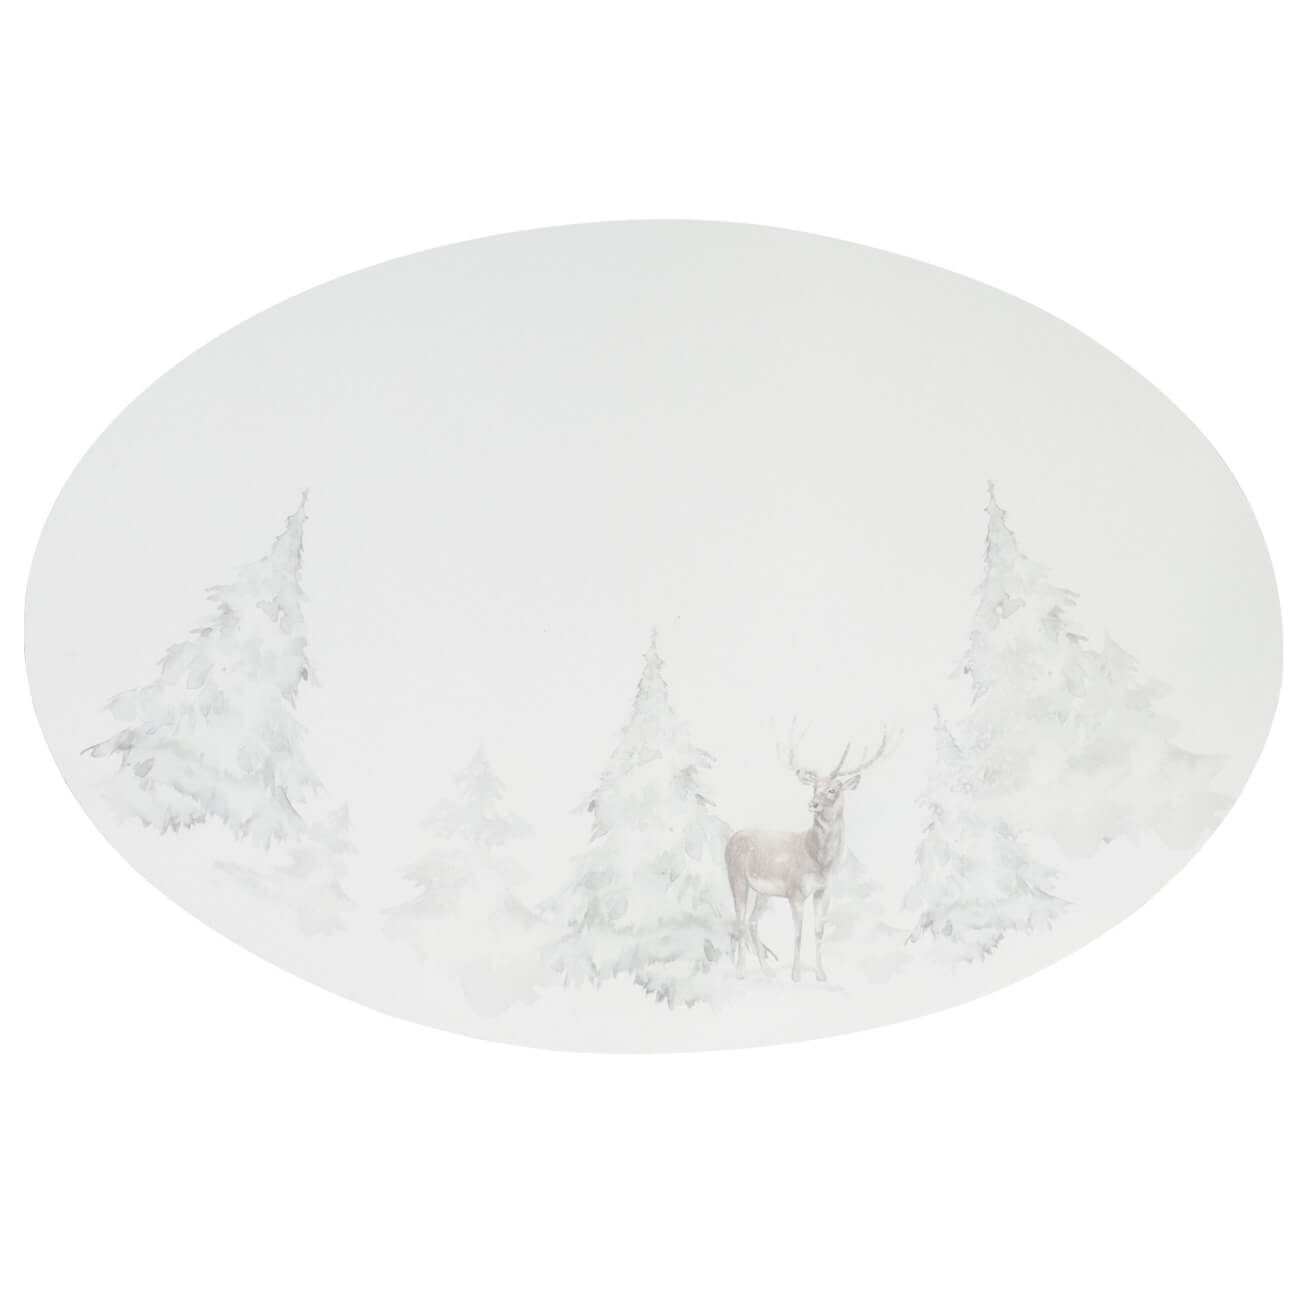 Салфетка под приборы, 30х45 см, ПВХ, овальная, белая, Олень в снежном лесу, Rock print